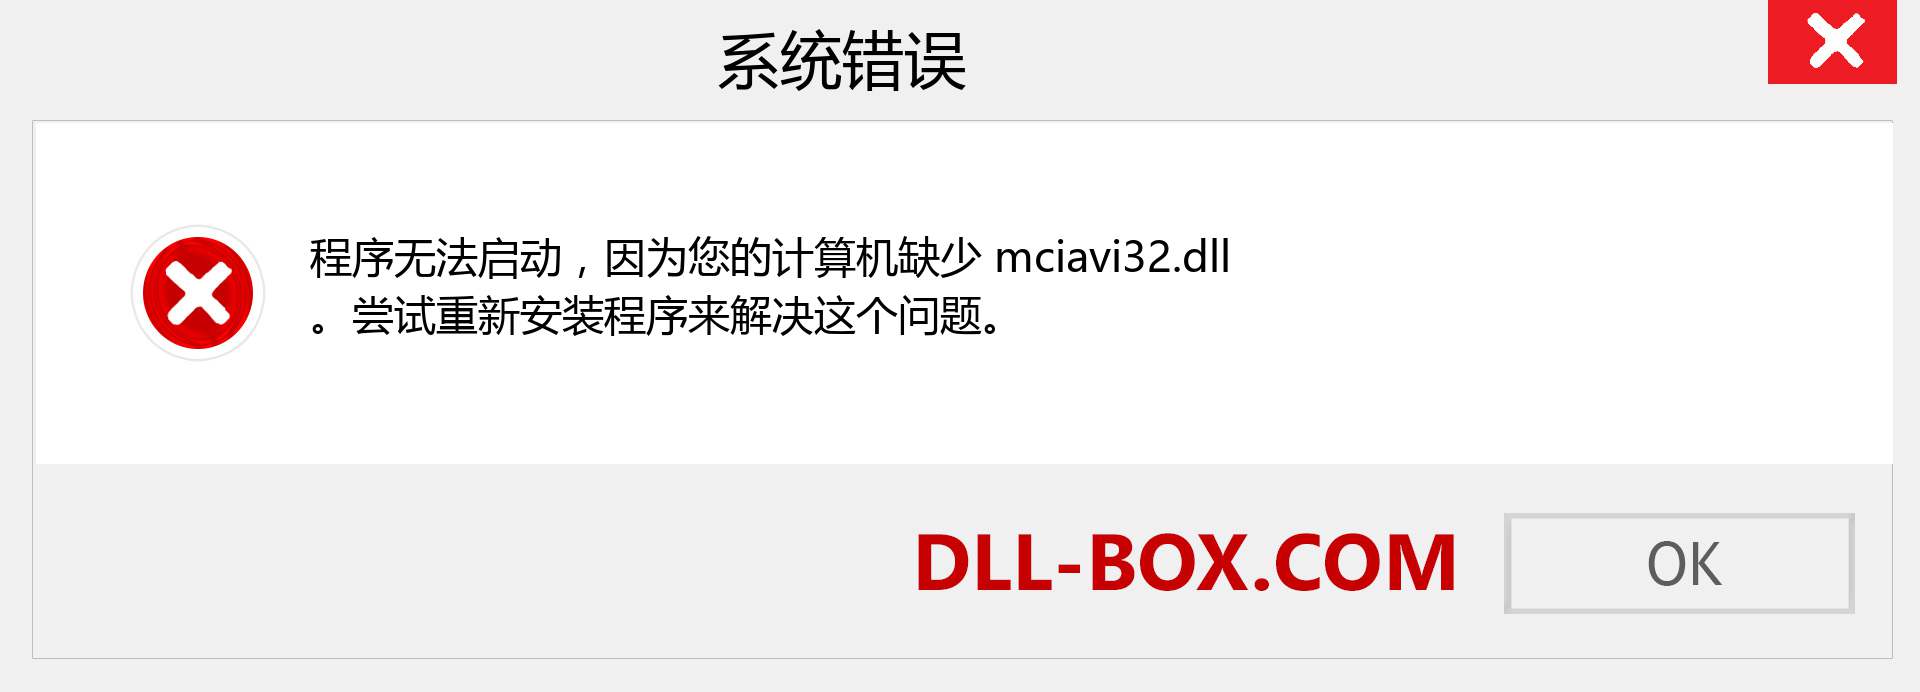 mciavi32.dll 文件丢失？。 适用于 Windows 7、8、10 的下载 - 修复 Windows、照片、图像上的 mciavi32 dll 丢失错误